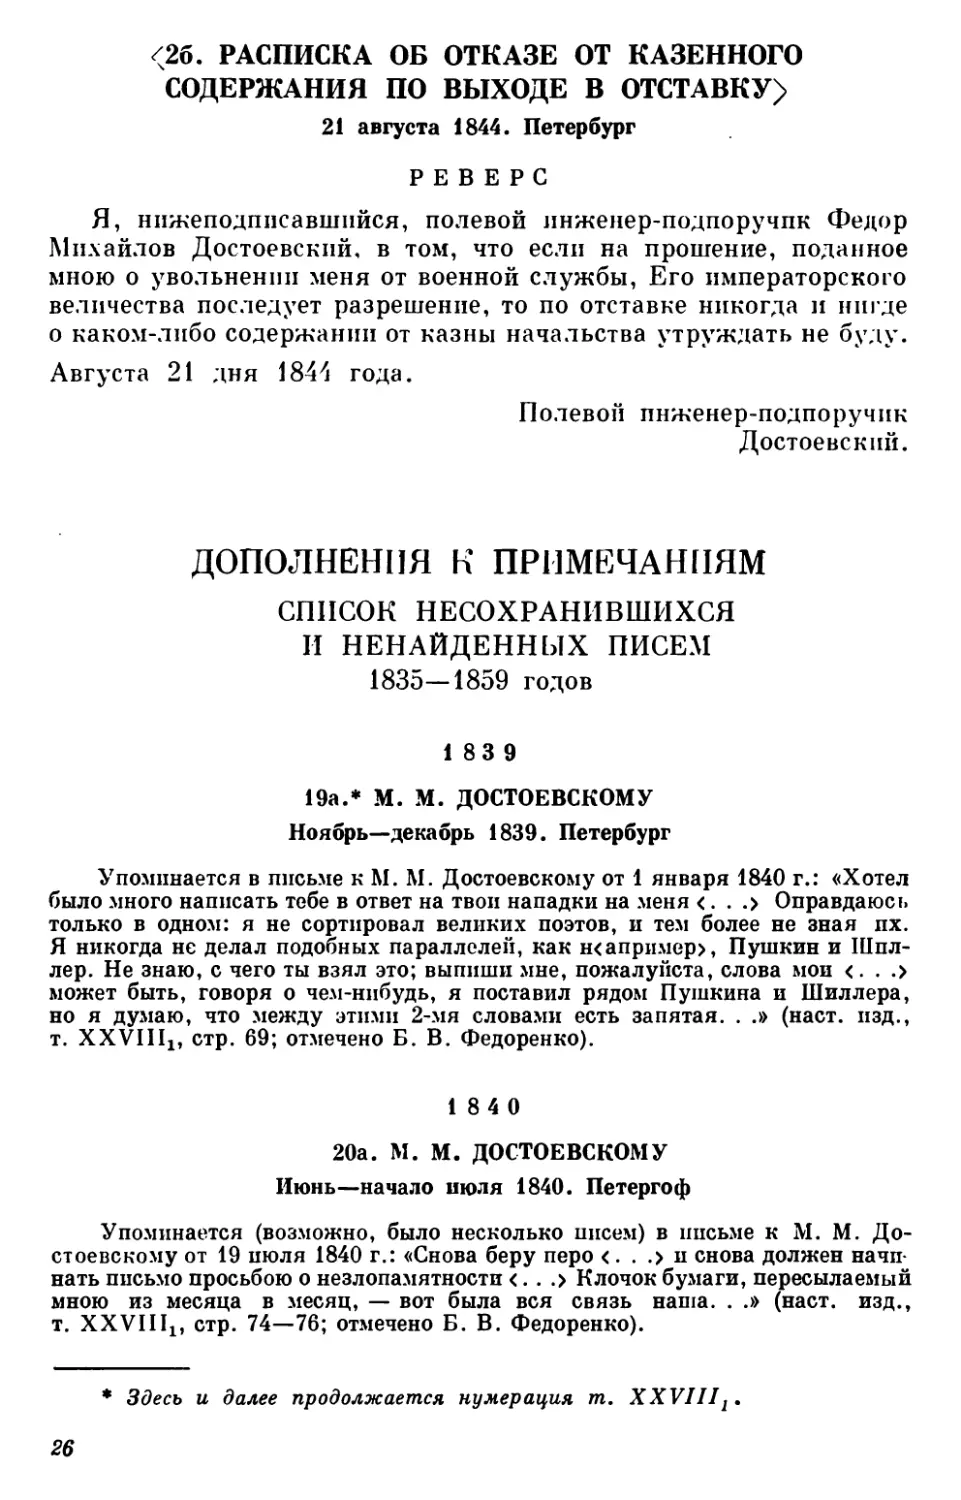 Дополнения к примечаниям
Список несохранившихся и ненайденных писем 1835—1859 годов